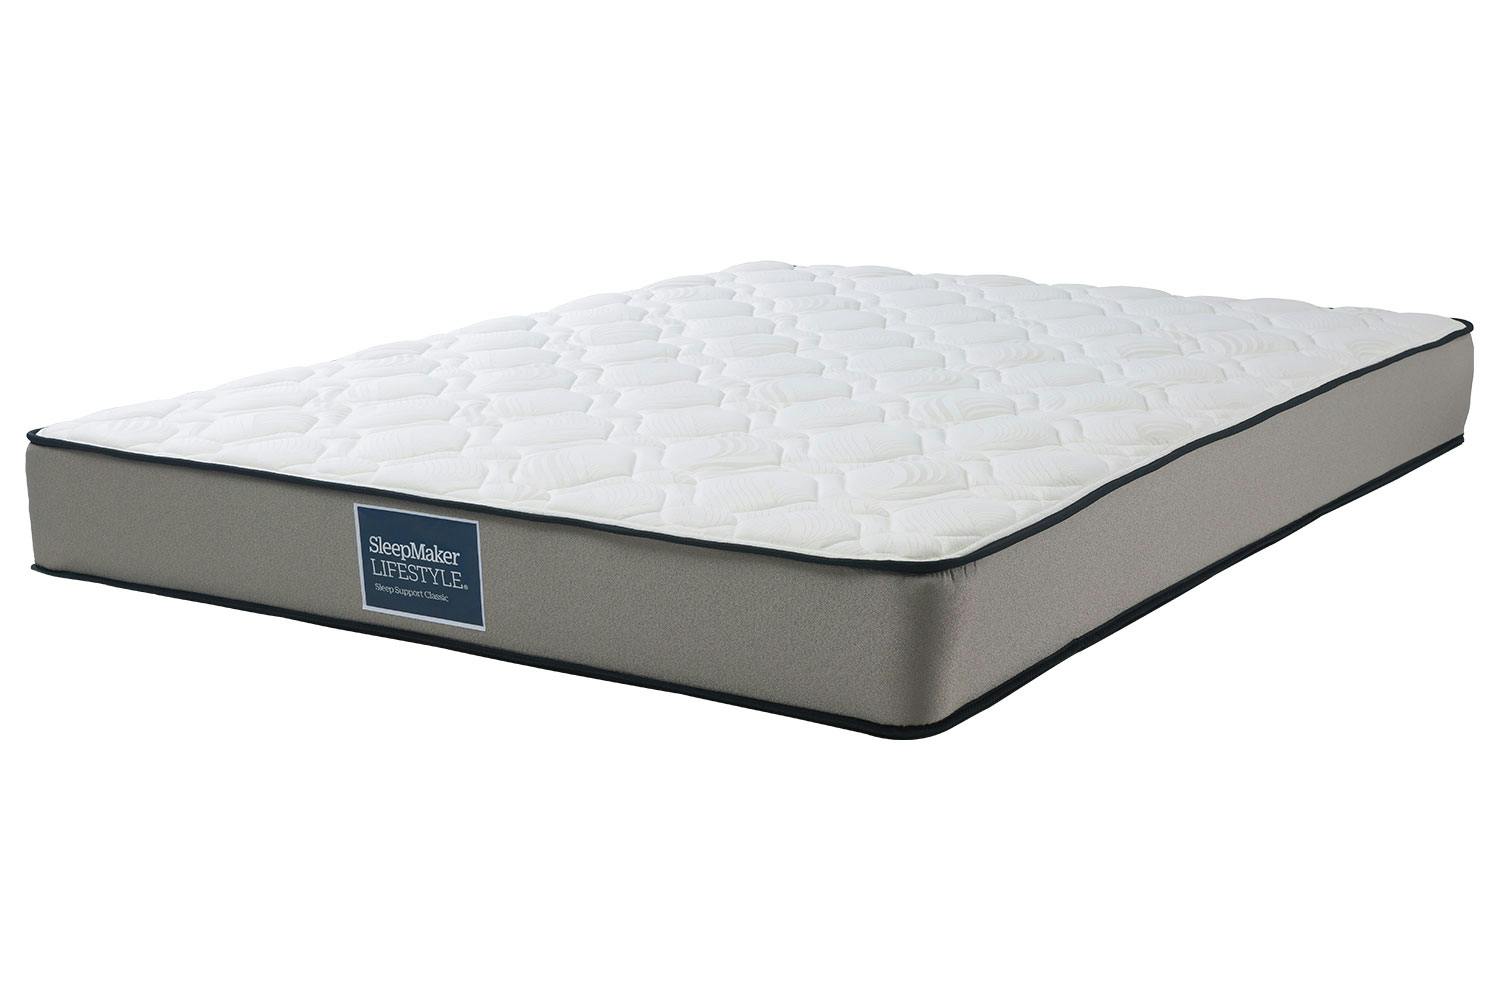 sleepmaker duracoil queen mattress price